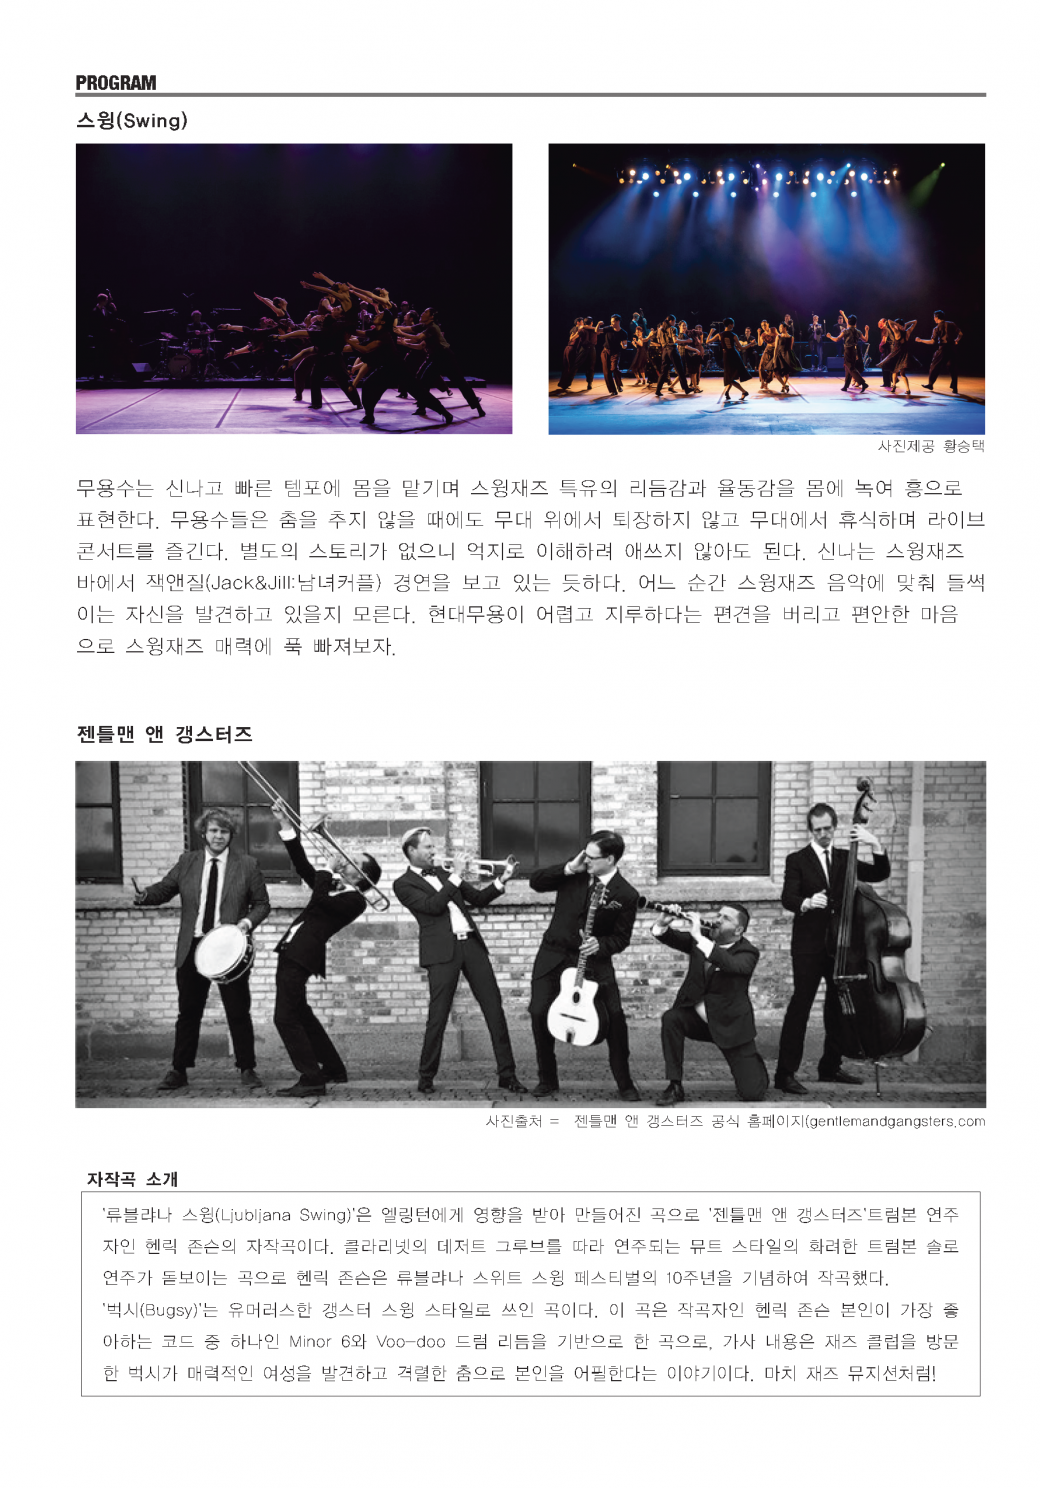 [방방곡곡] 국립현대무용단의 '스윙(젠틀 앤 갱스터즈 라이브 연주)' 2019. 8. 27.(목) 19:30 